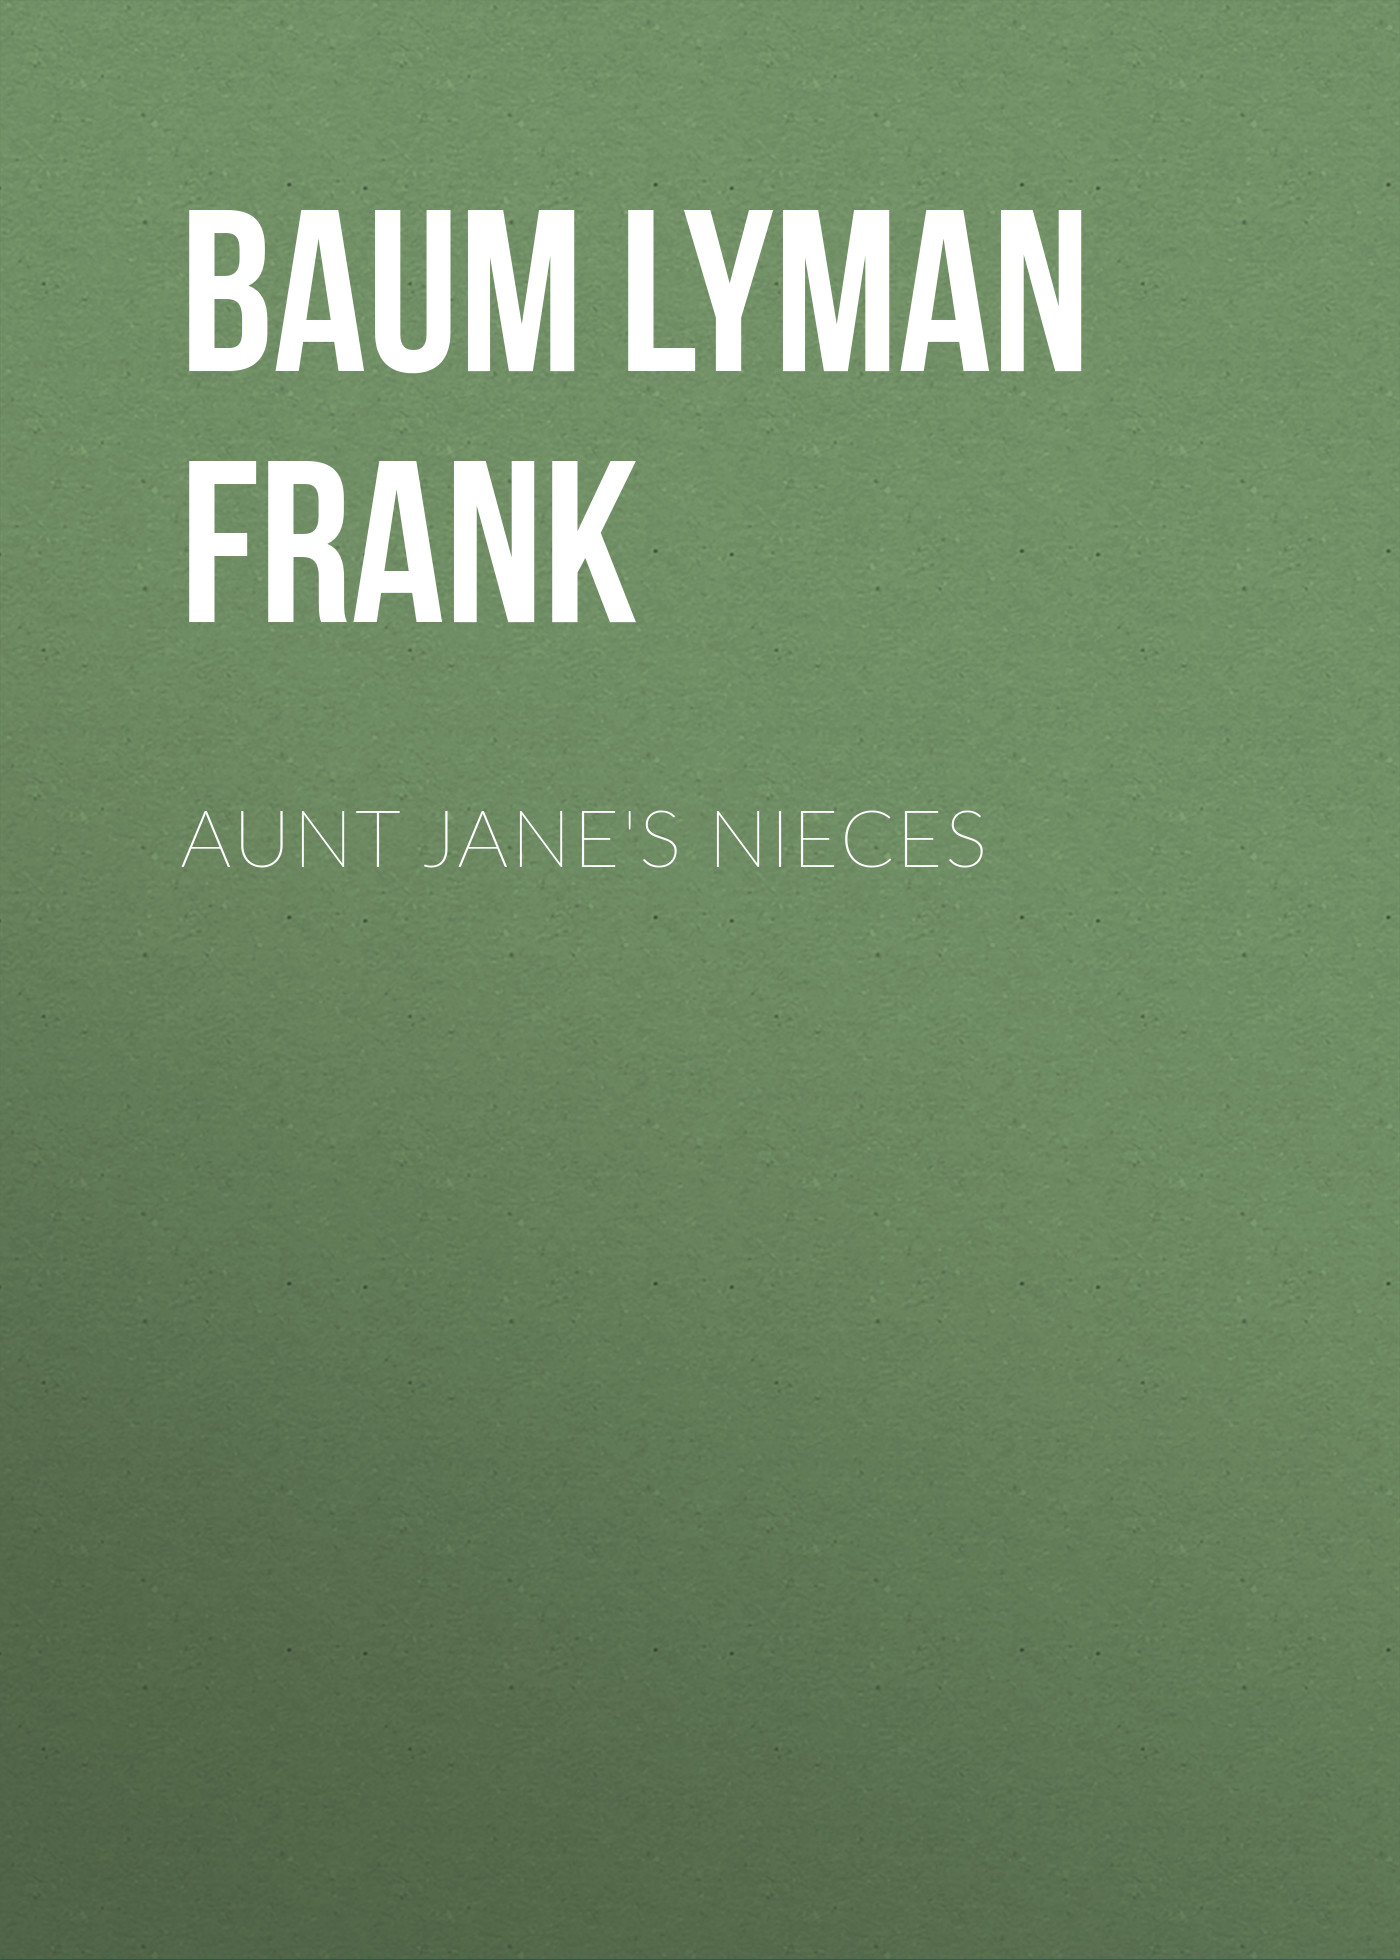 Книга Aunt Jane's Nieces из серии , созданная Lyman Baum, может относится к жанру Зарубежная старинная литература, Зарубежная классика. Стоимость электронной книги Aunt Jane's Nieces с идентификатором 25020203 составляет 0 руб.